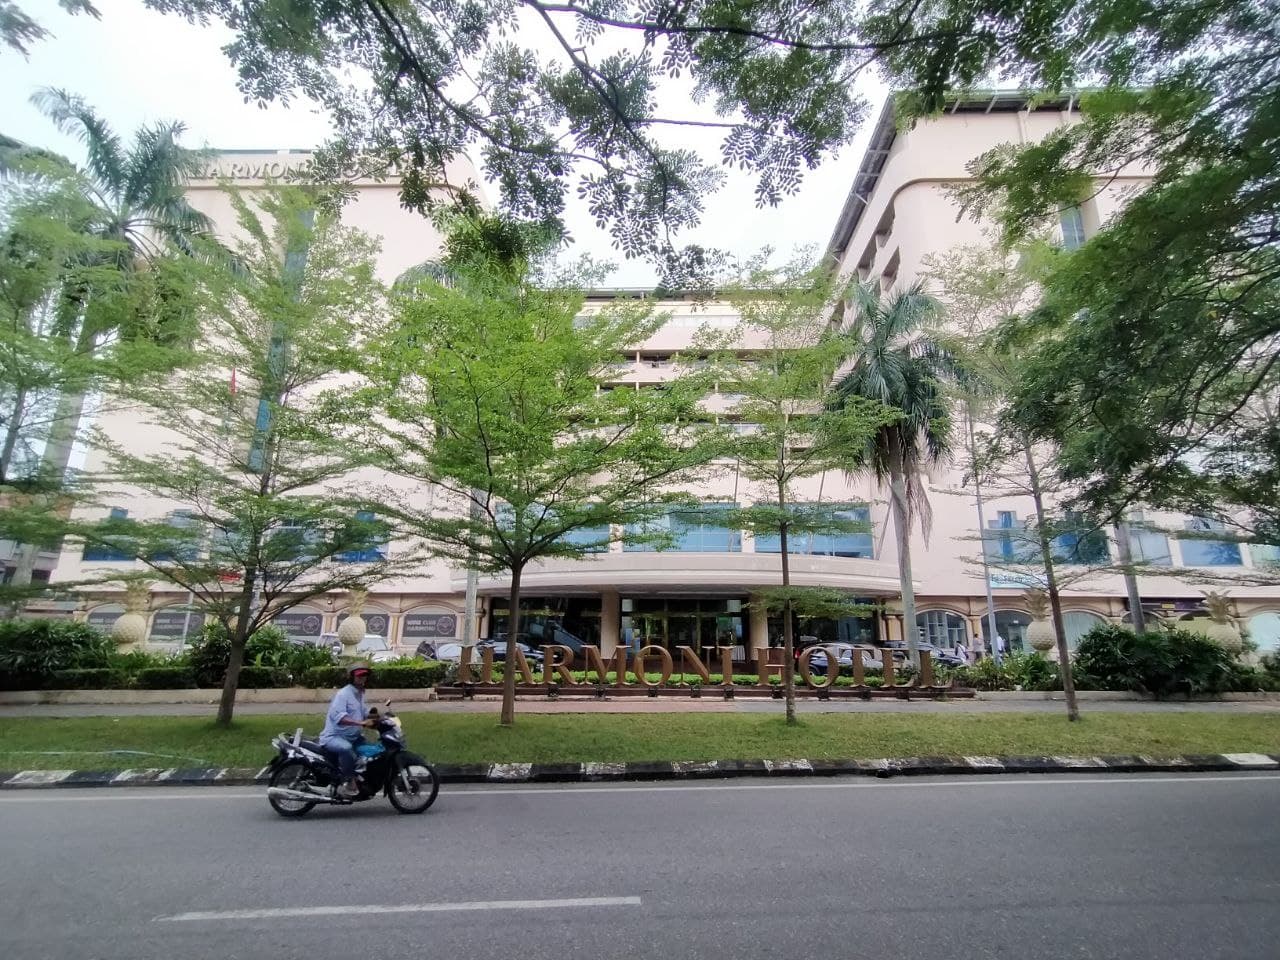 30 Tahun Beroperasi, Hotel Harmoni di Batam Tumbang Karena Pandemi COVID-19